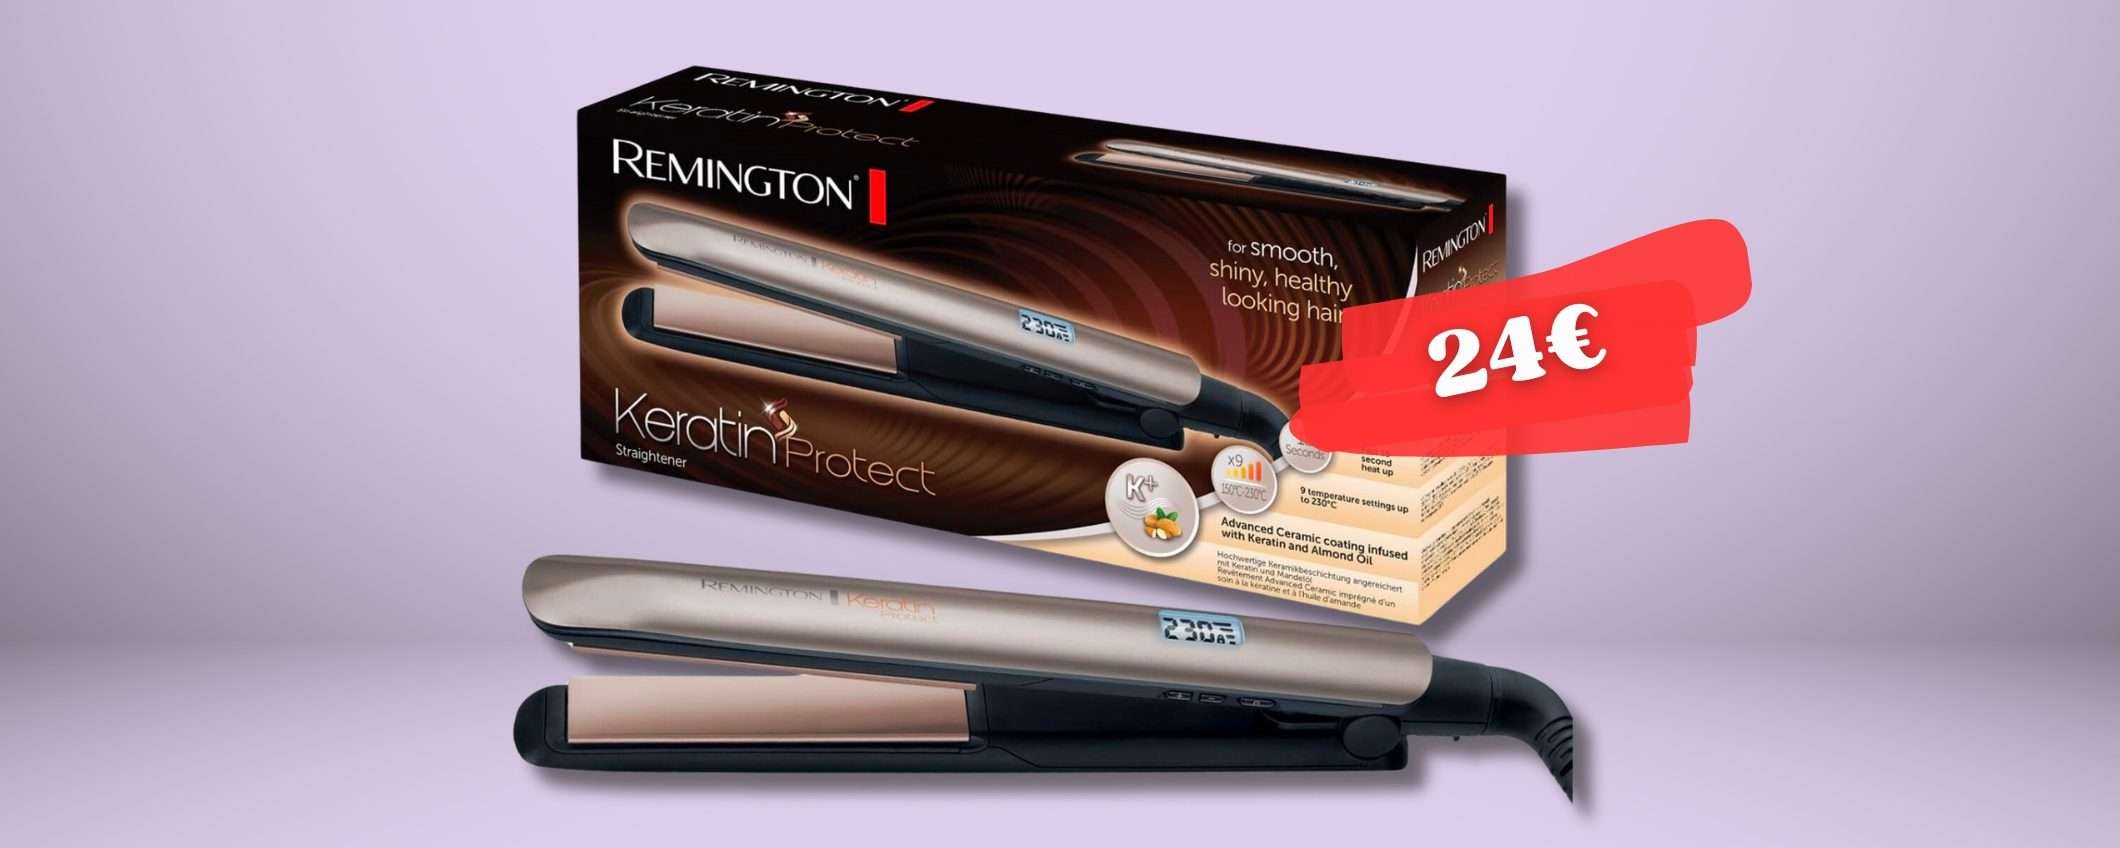 Remington piastra in CERAMICA per capelli lisci come SPAGHETTI (24€)